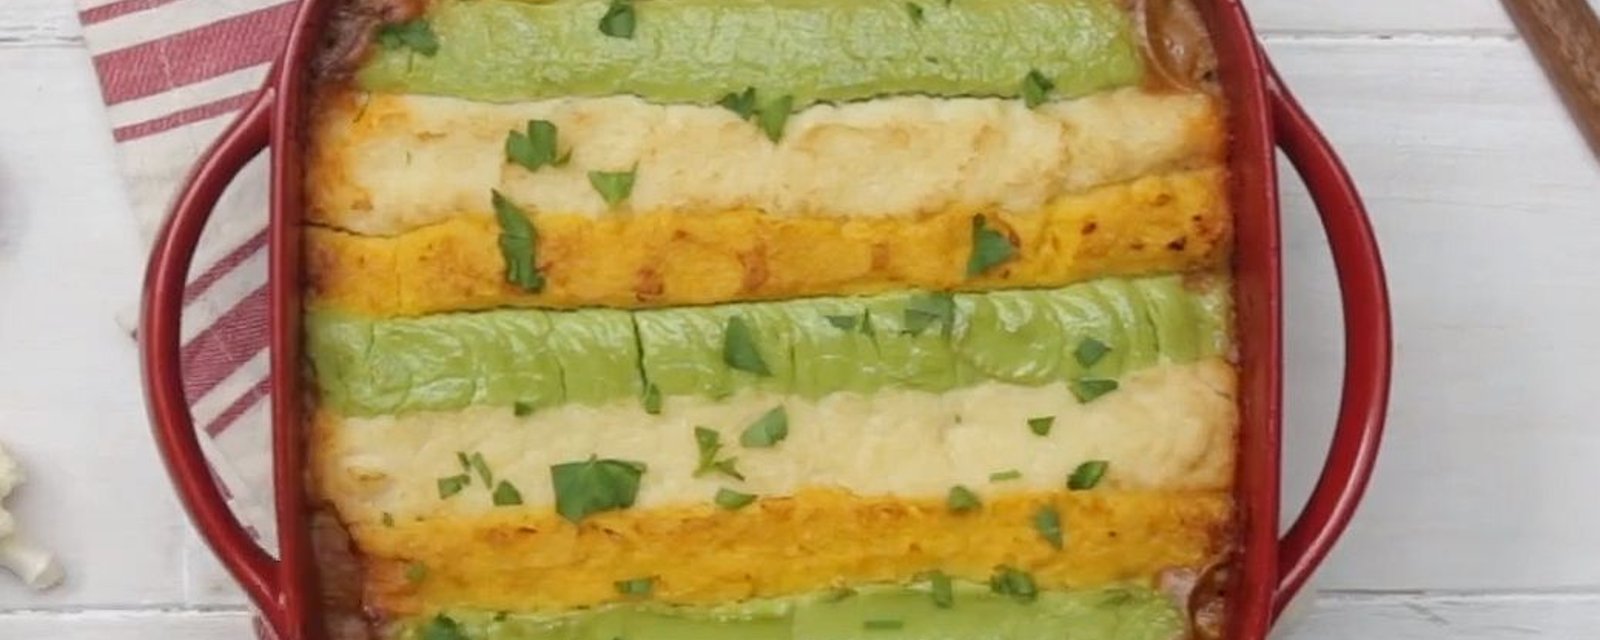 Pâté chinois réinventé avec purée tricolore au chou-fleur